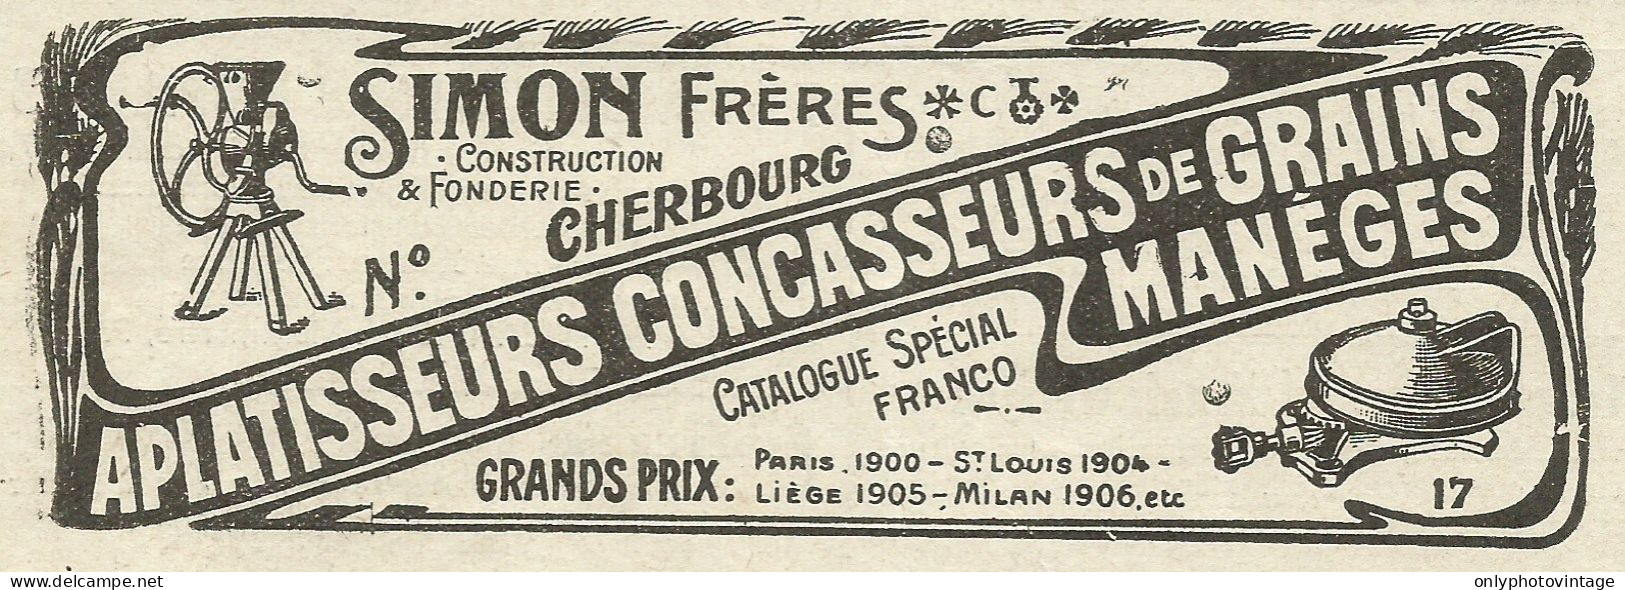 Simon Frères - Construction & Fonderie - Pubblicità 1934 - Advertising - Advertising